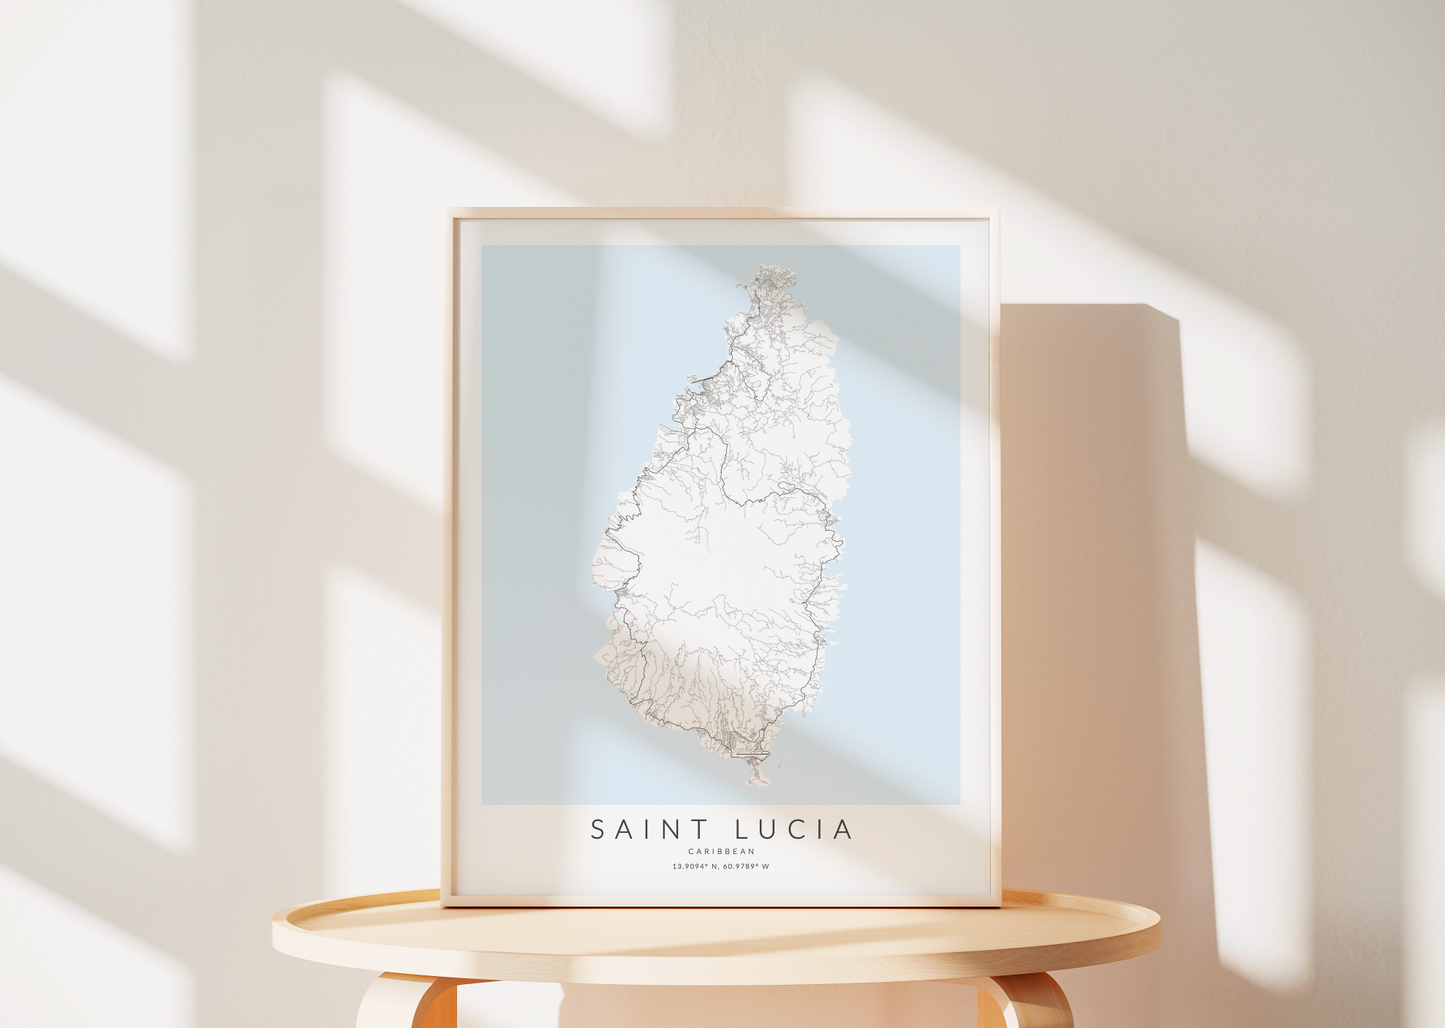 Saint Lucia Map Print